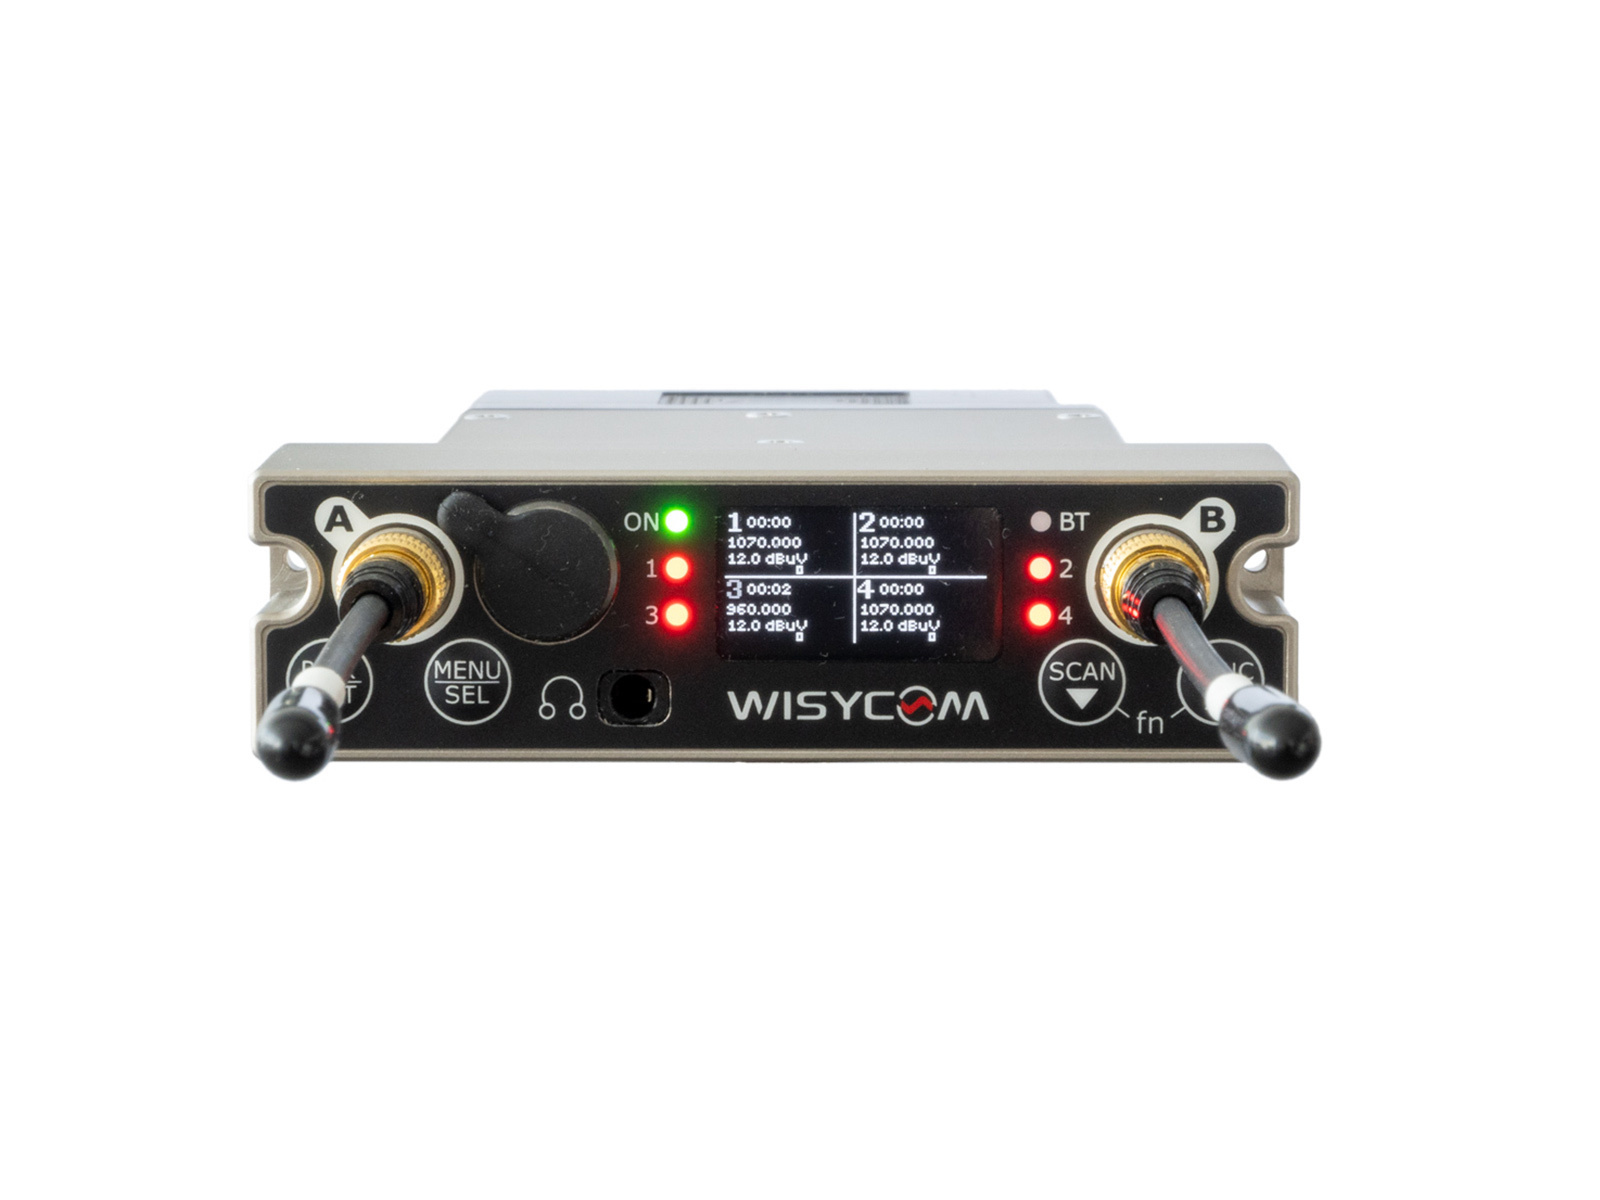 Wisycom Wisycom - Deal - Promo Kit - MCR54 Quad Receiver